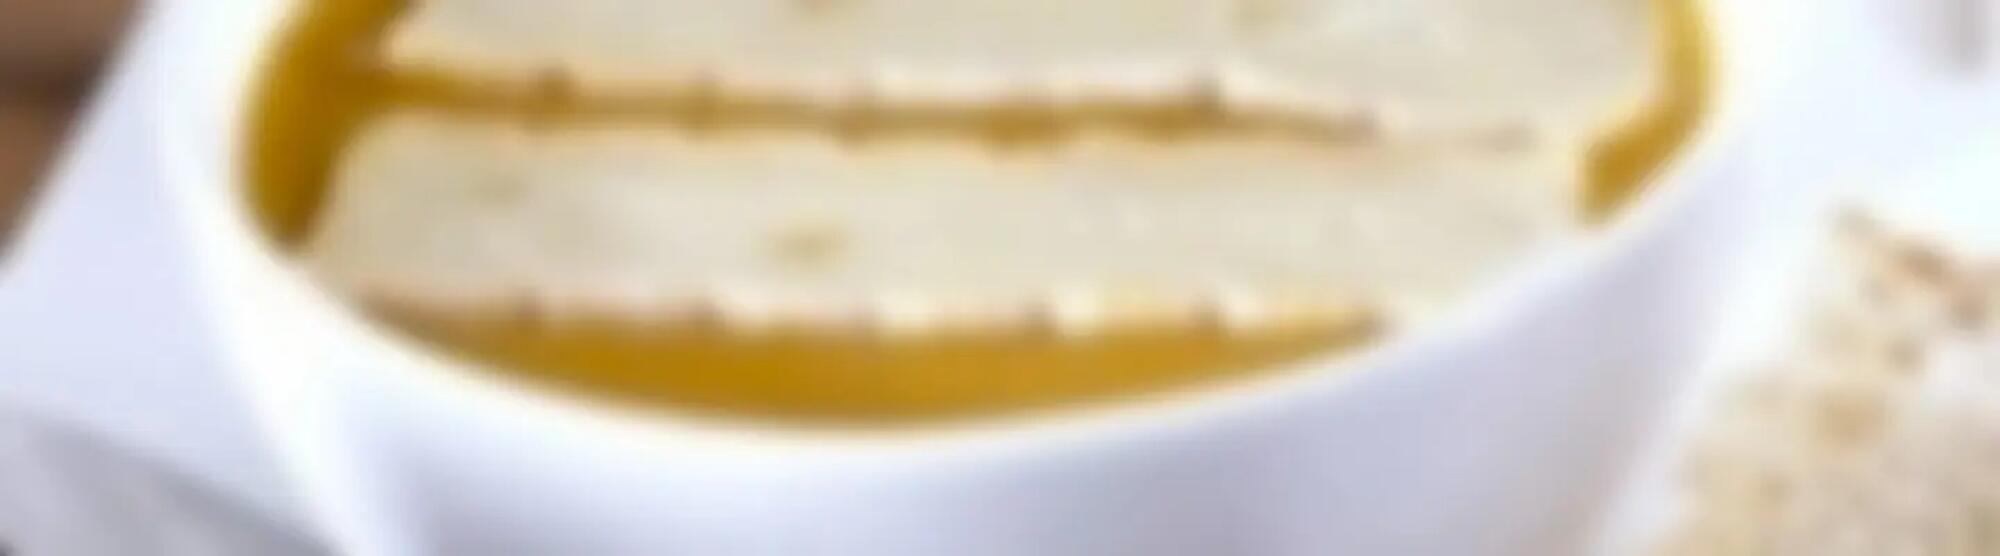 Recette : Soupe potiron-châtaigne au fromage